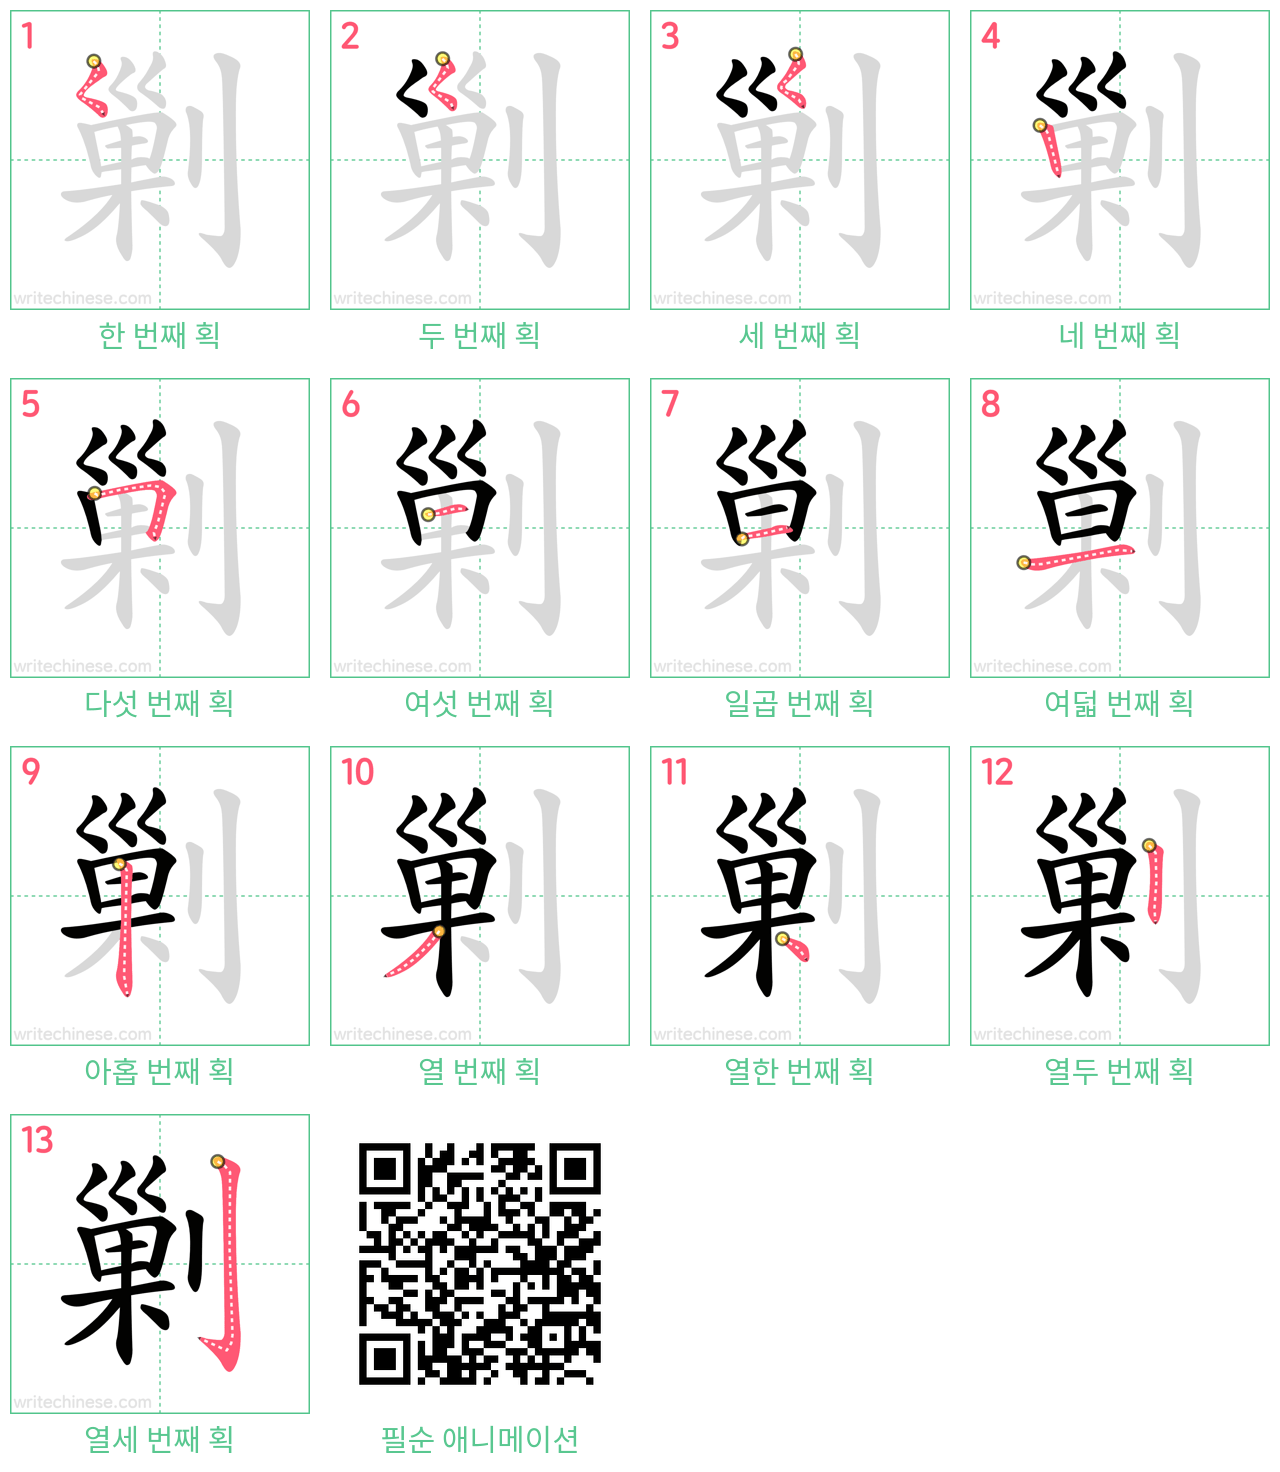 剿 step-by-step stroke order diagrams